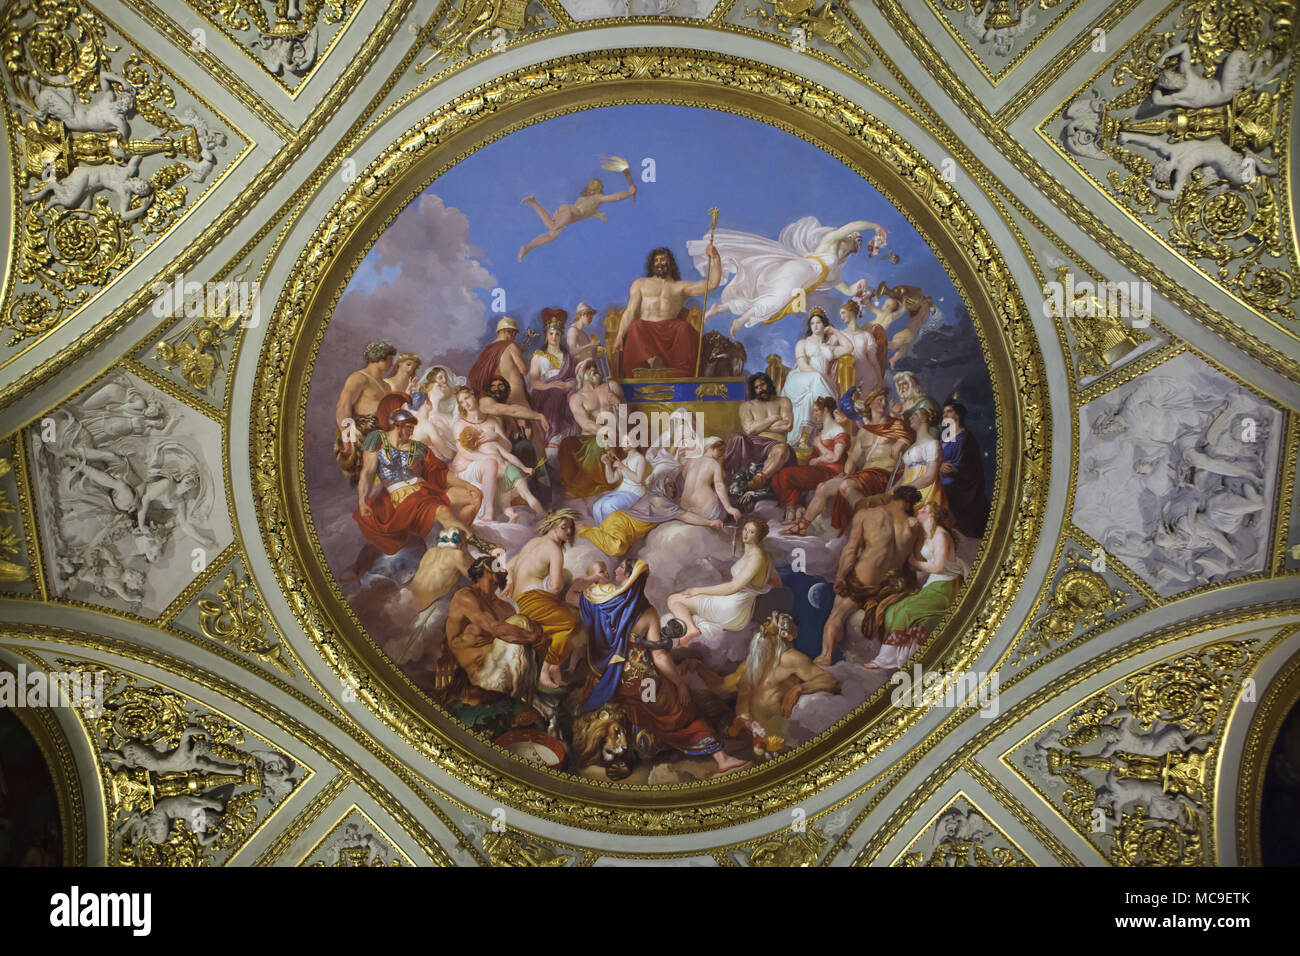 Assemblée des dieux présidé par Jupiter sur le Mont Olympe. Plafond peinture par le peintre italien Luigi Sabatelli dans l'Iliade Prix dans la Galerie Palatine (Galleria Palatina) dans le Palais Pitti à Florence, Toscane, Italie. Banque D'Images